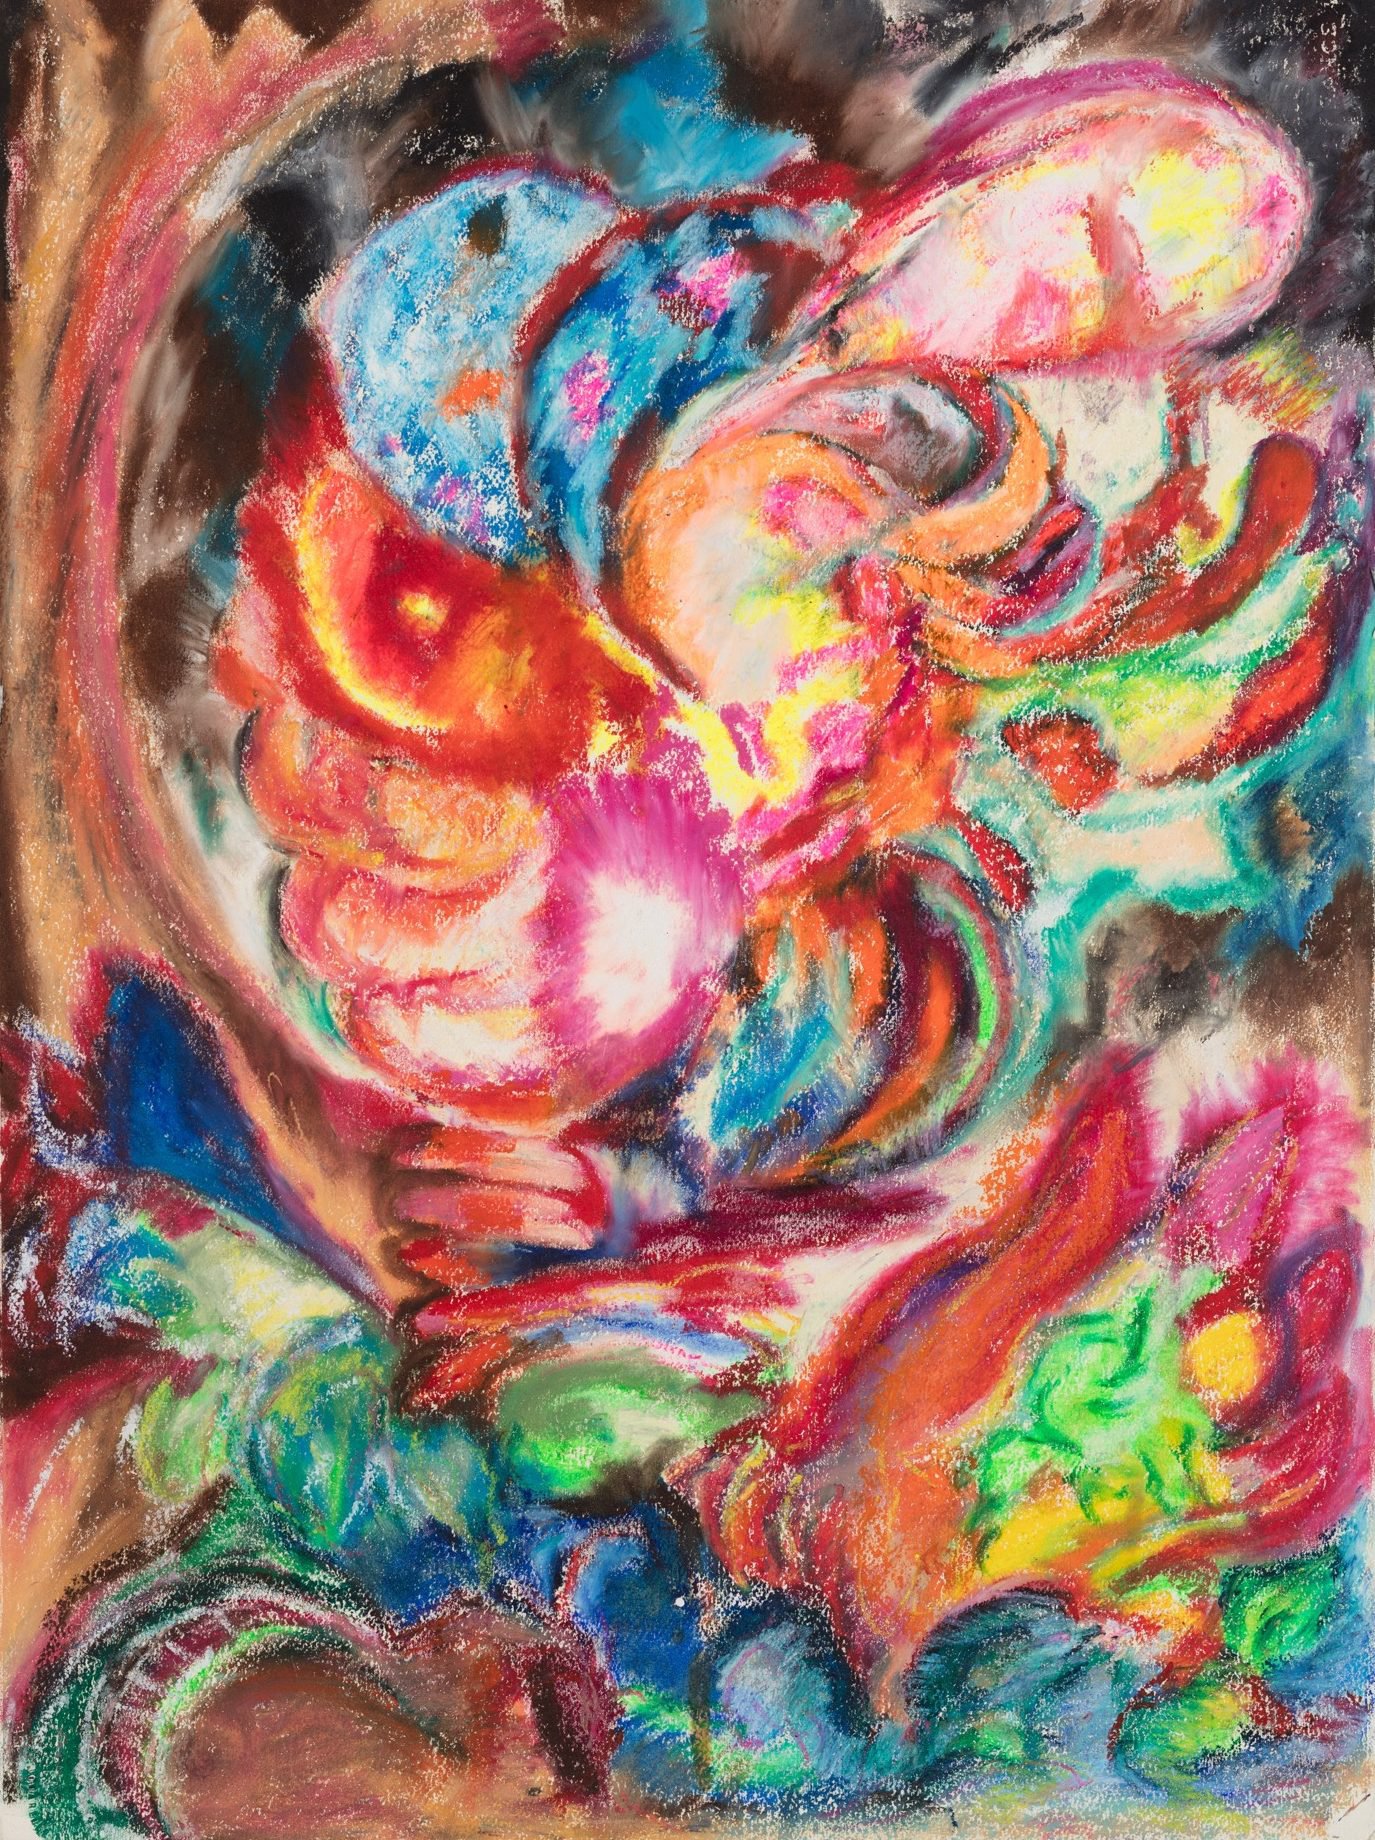 Liliane Lijn, Her Monstrous Head, oil pastel on paper, 76 x 56.4 cm (29.9 x 22.20 in), 1989-94